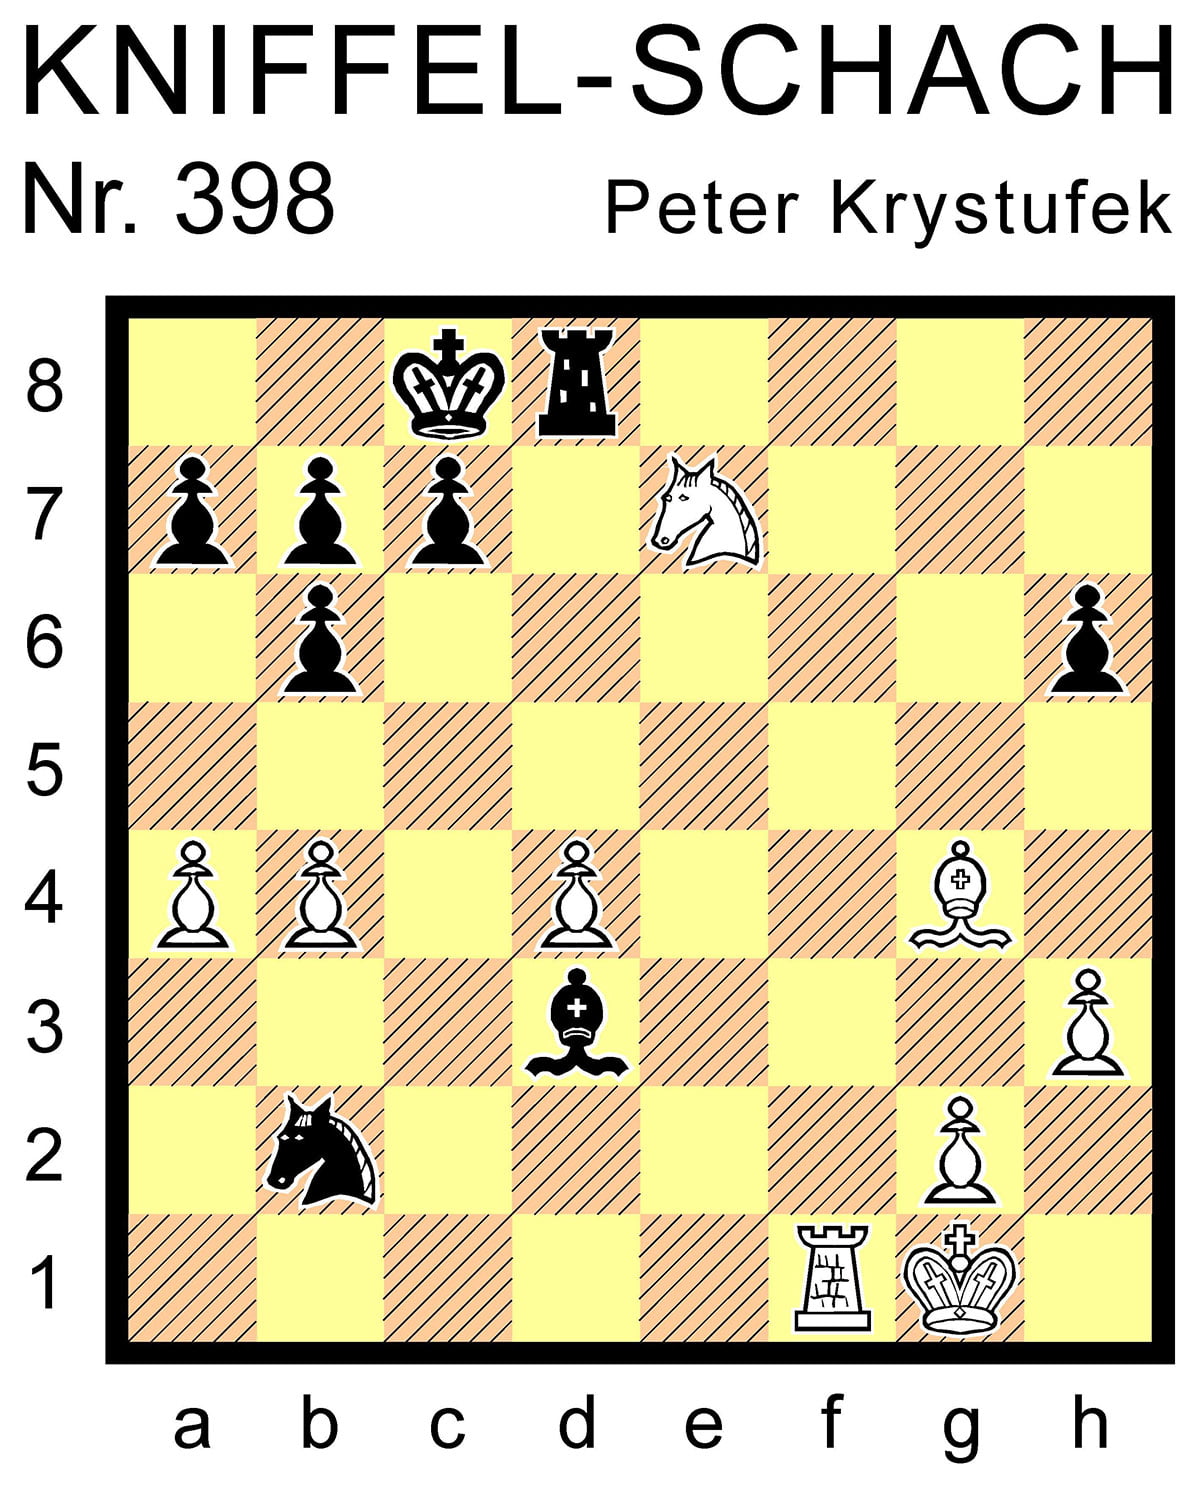 Kniffel-Schach Nr. 398